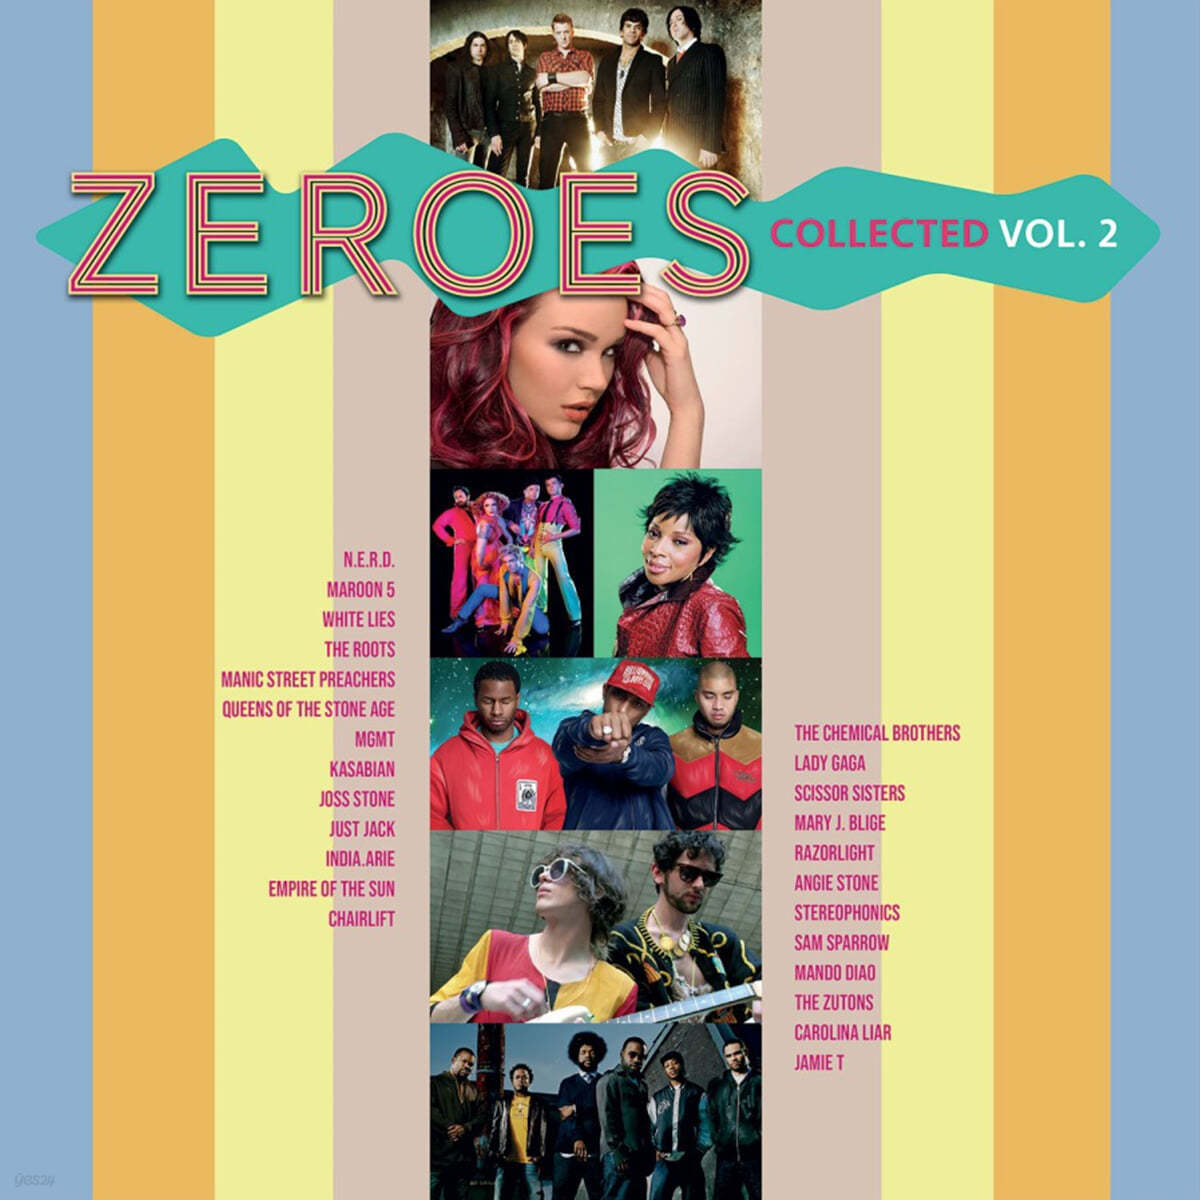 2000년대 인기곡 모음집 (Zeroes Collected Vol.2) [레드 컬러 2LP]